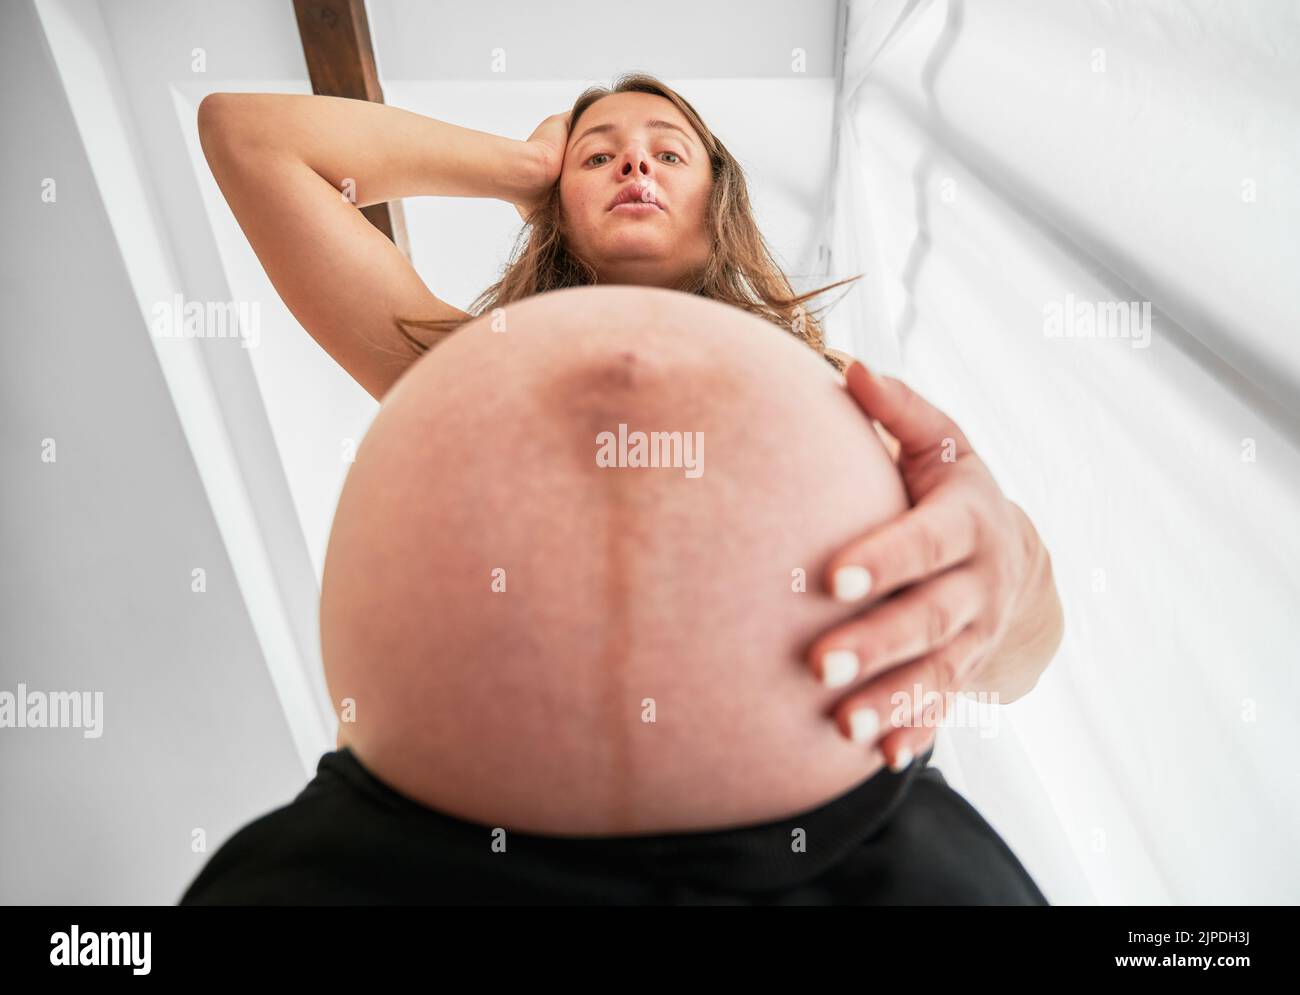 Bottom-Ansicht der Schwangeren, die durch die Größe ihres Bauches überrascht. Frau, die eine Hand auf ihren schwanger Bauch und die andere auf ihren Kopf legt und mit Bestürzung nach unten schaut. Stockfoto